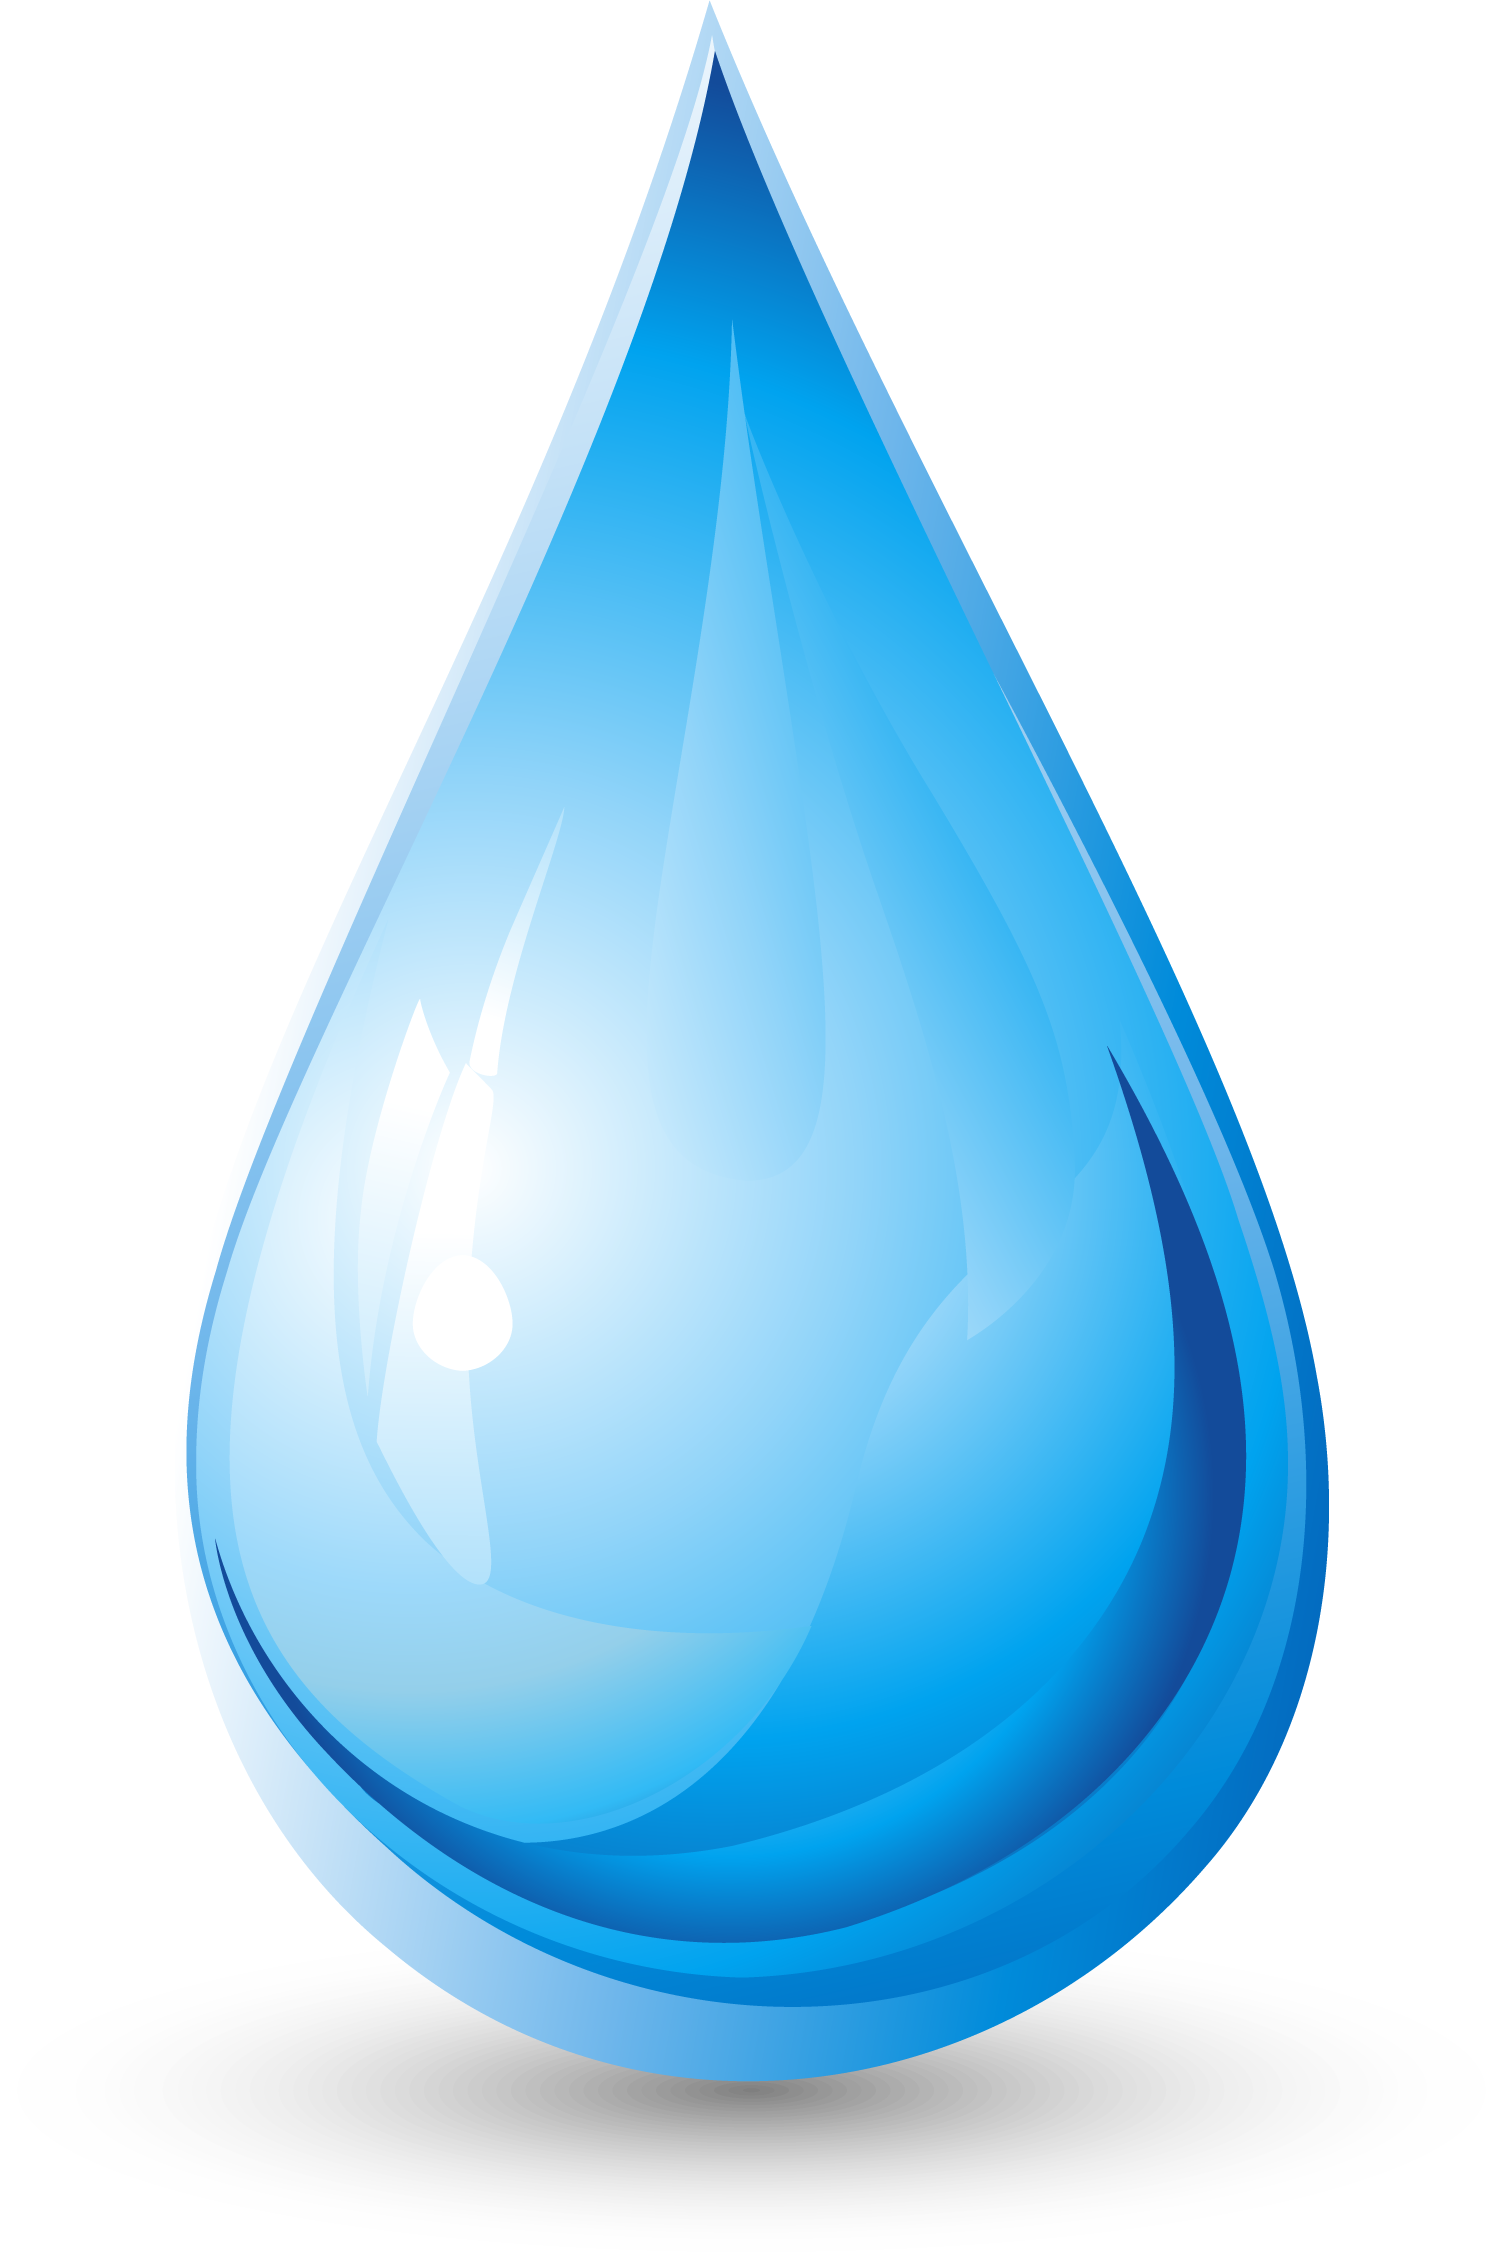 Download Vector Of Drop Water-Drop Water Free Download ...